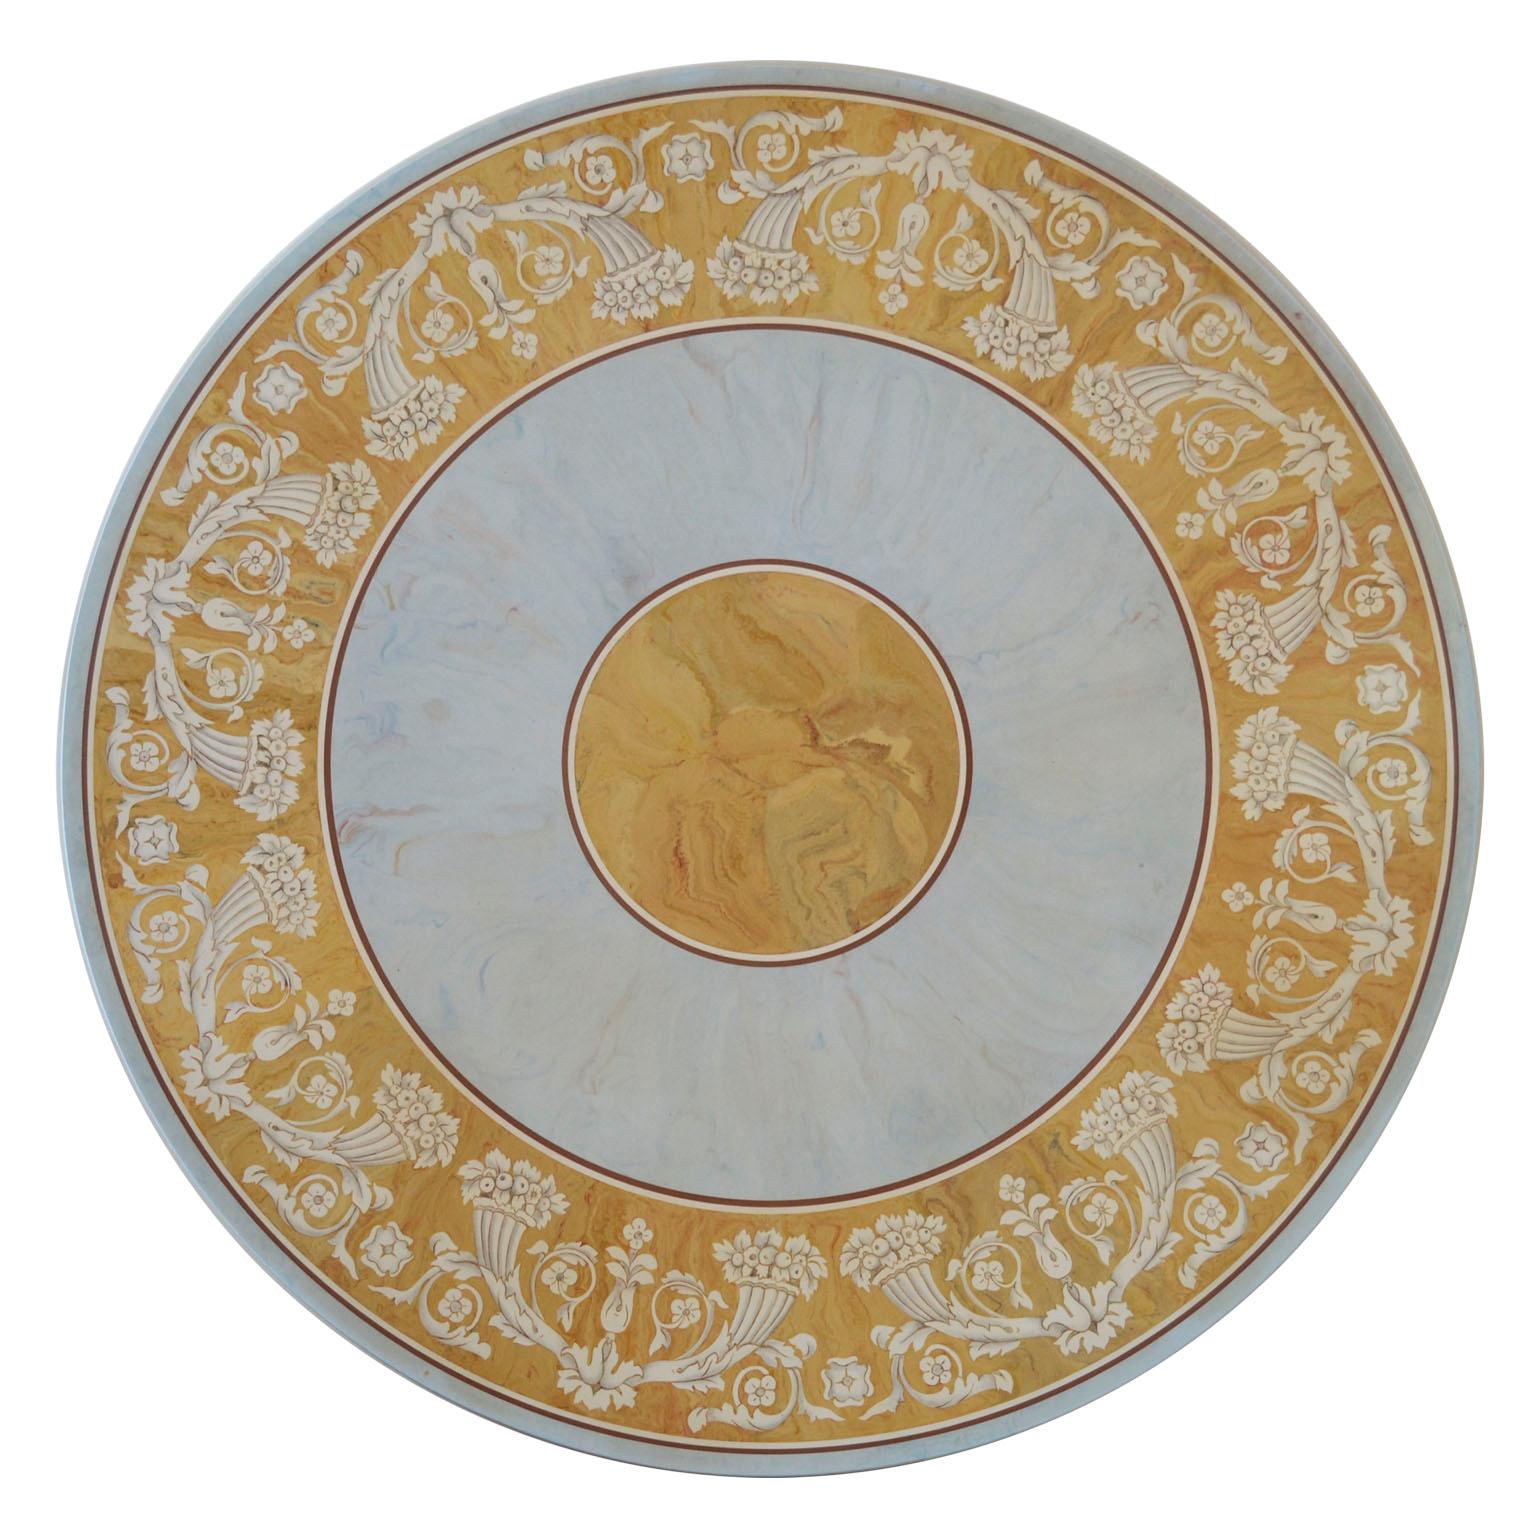 Verbena runder Ess- oder Mitteltisch
Dieser Tisch mit Scagliola Kunst Intarsien inspiriert sich an der klassischen Paliotto mit einem Rahmen aus Füllhörnern, aber die Wahl der Farben, Siena gelb und hellblau geben eine raffinierte Wirkung auf diese